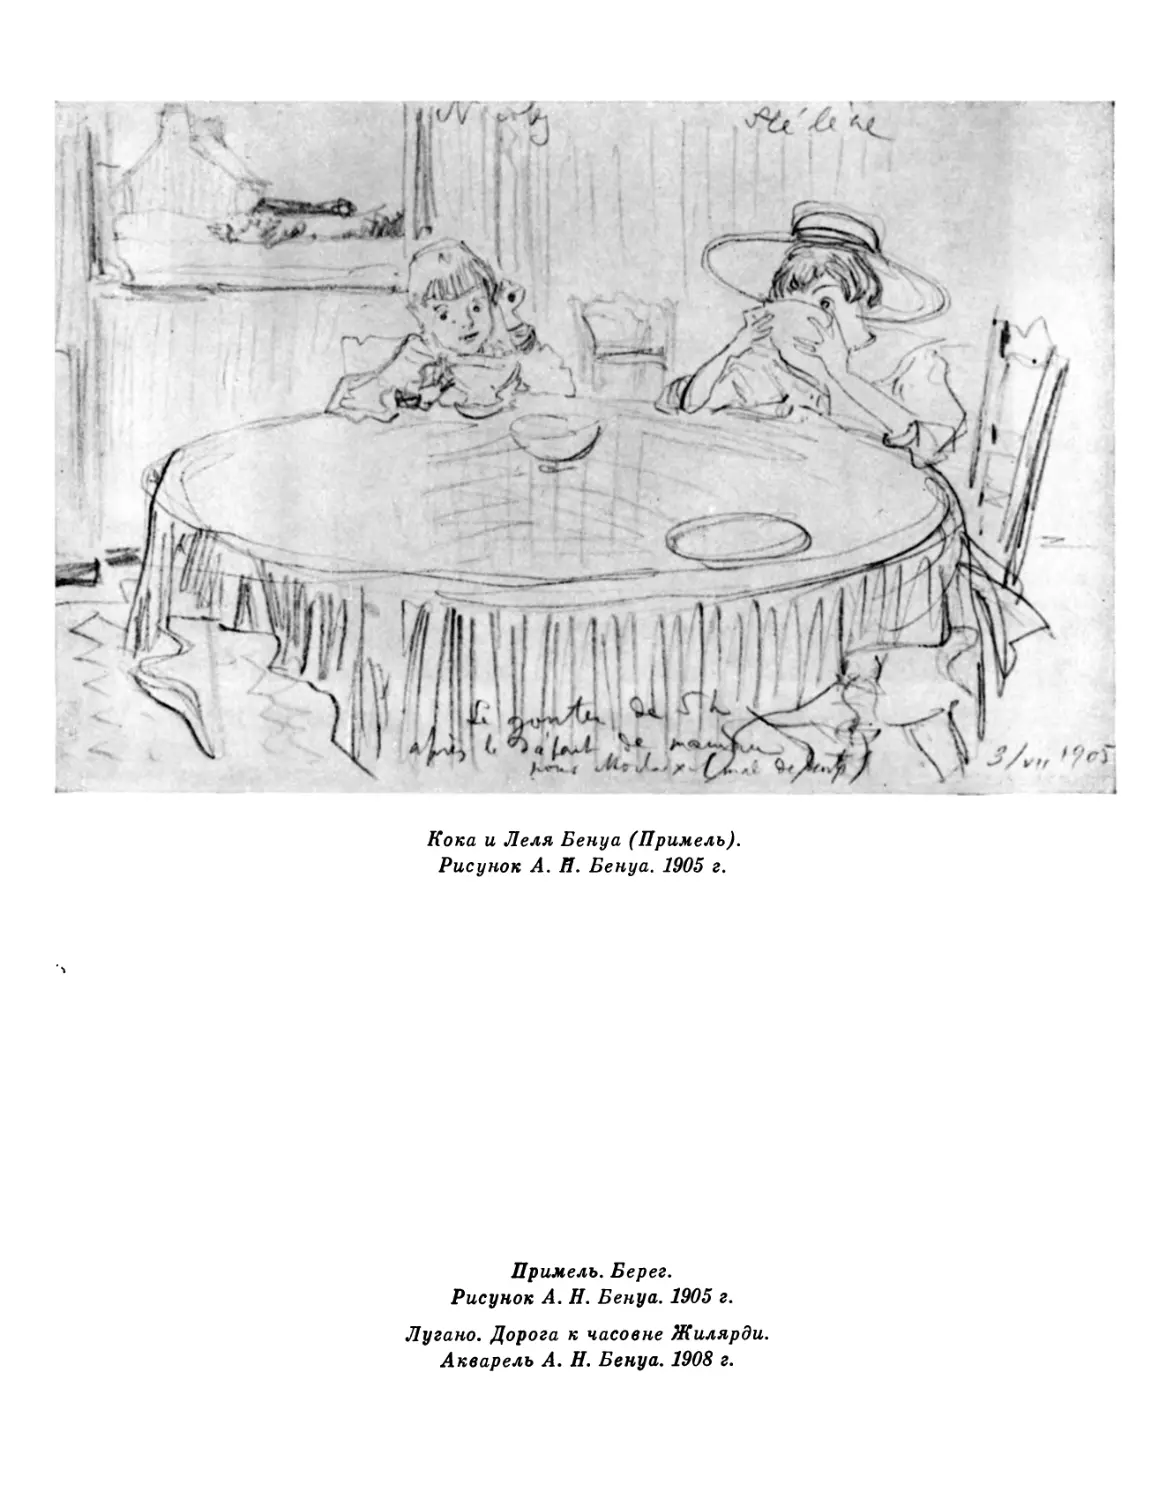 Кока и Леля Бенуа. Рисунок А. Н. Бенуа